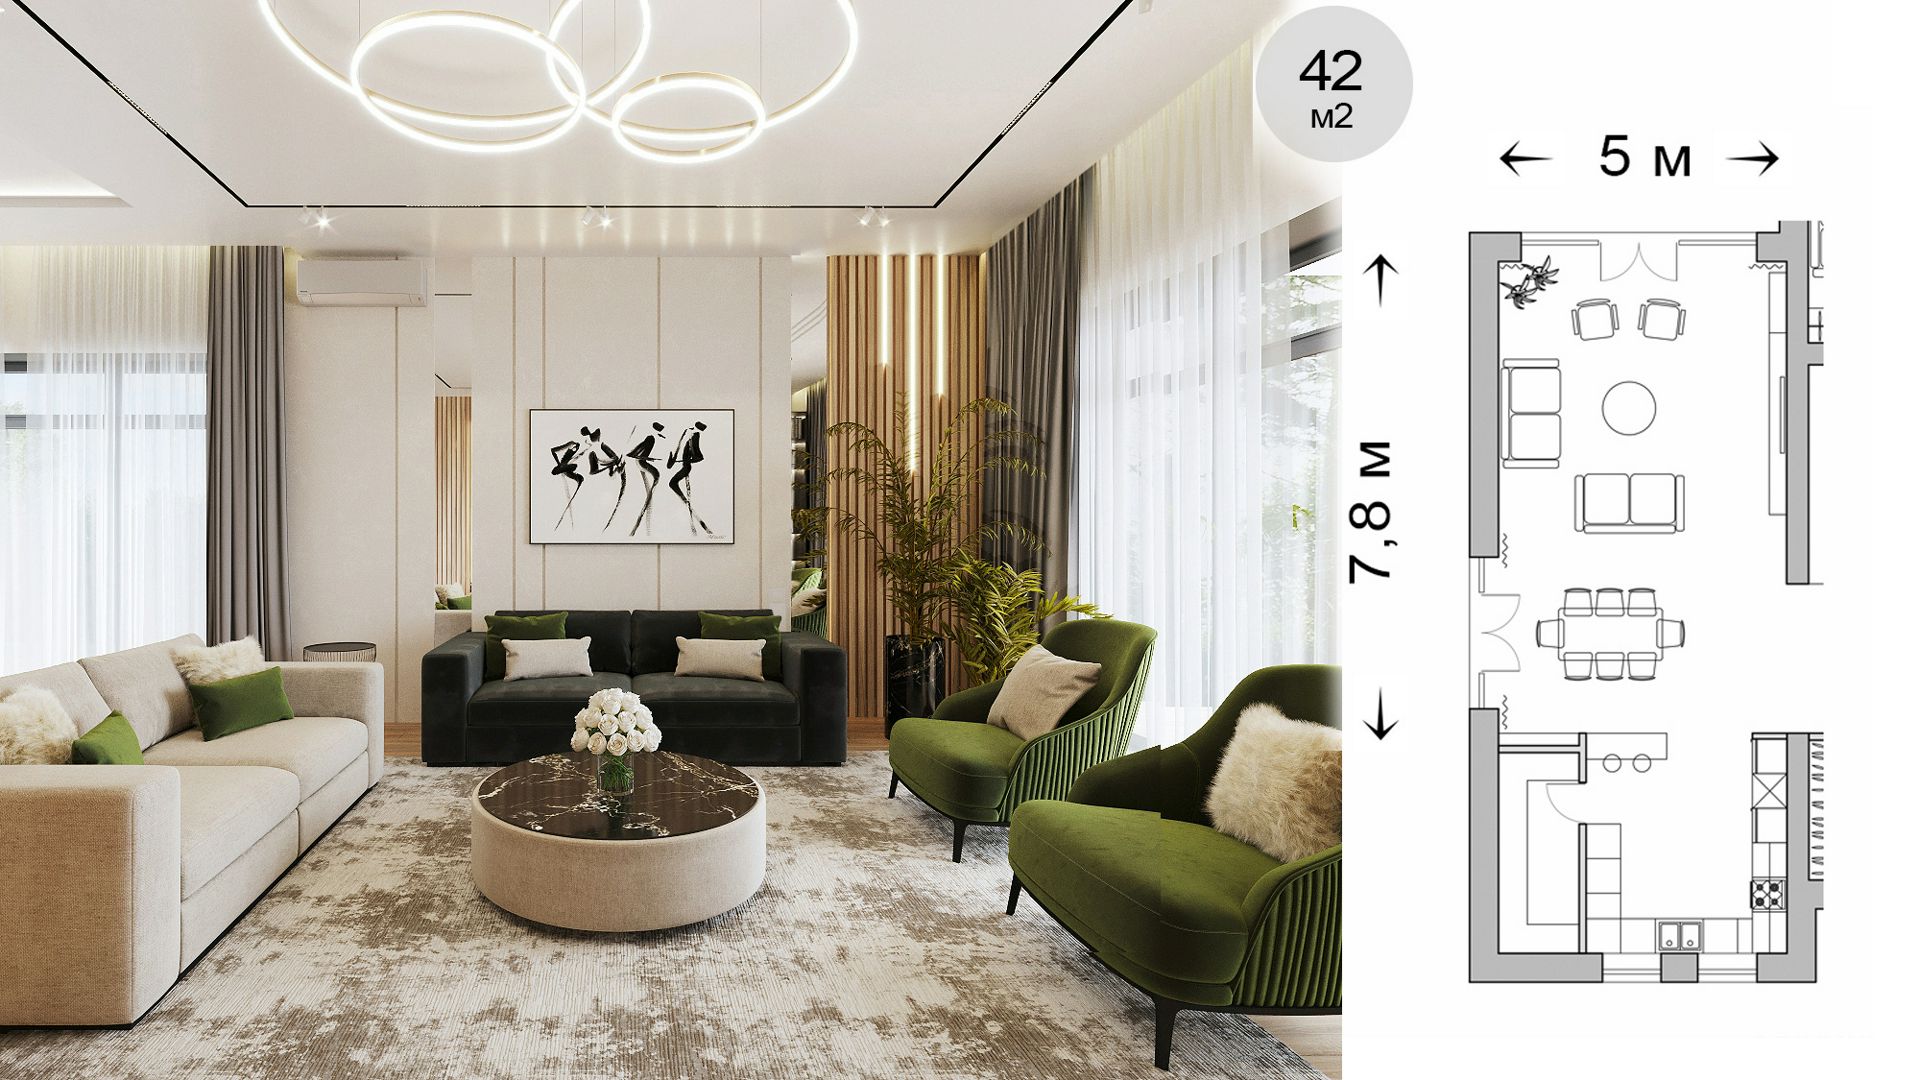 Готовая сцена 3D модель дизайн интерьера гостиной квартиры дома. 3D max / Corona Render